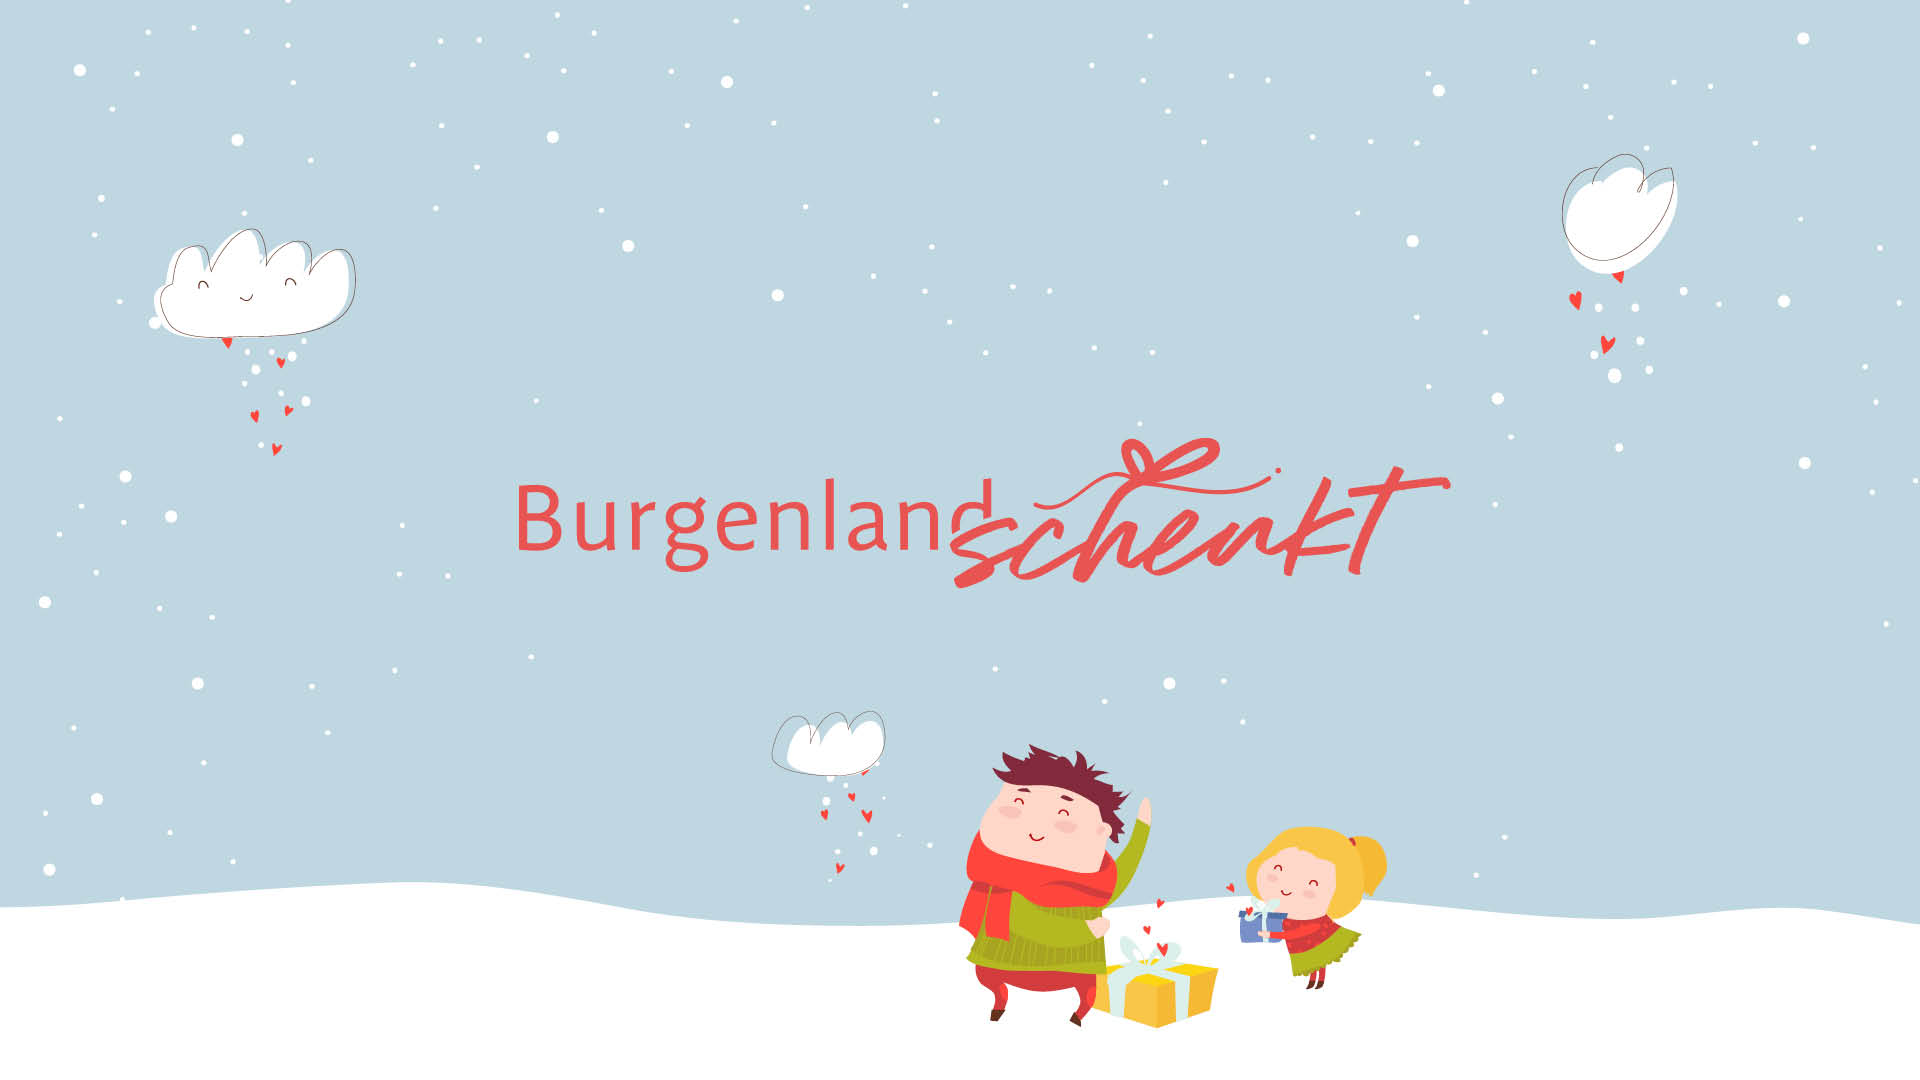 (c) Burgenlandschenkt.at